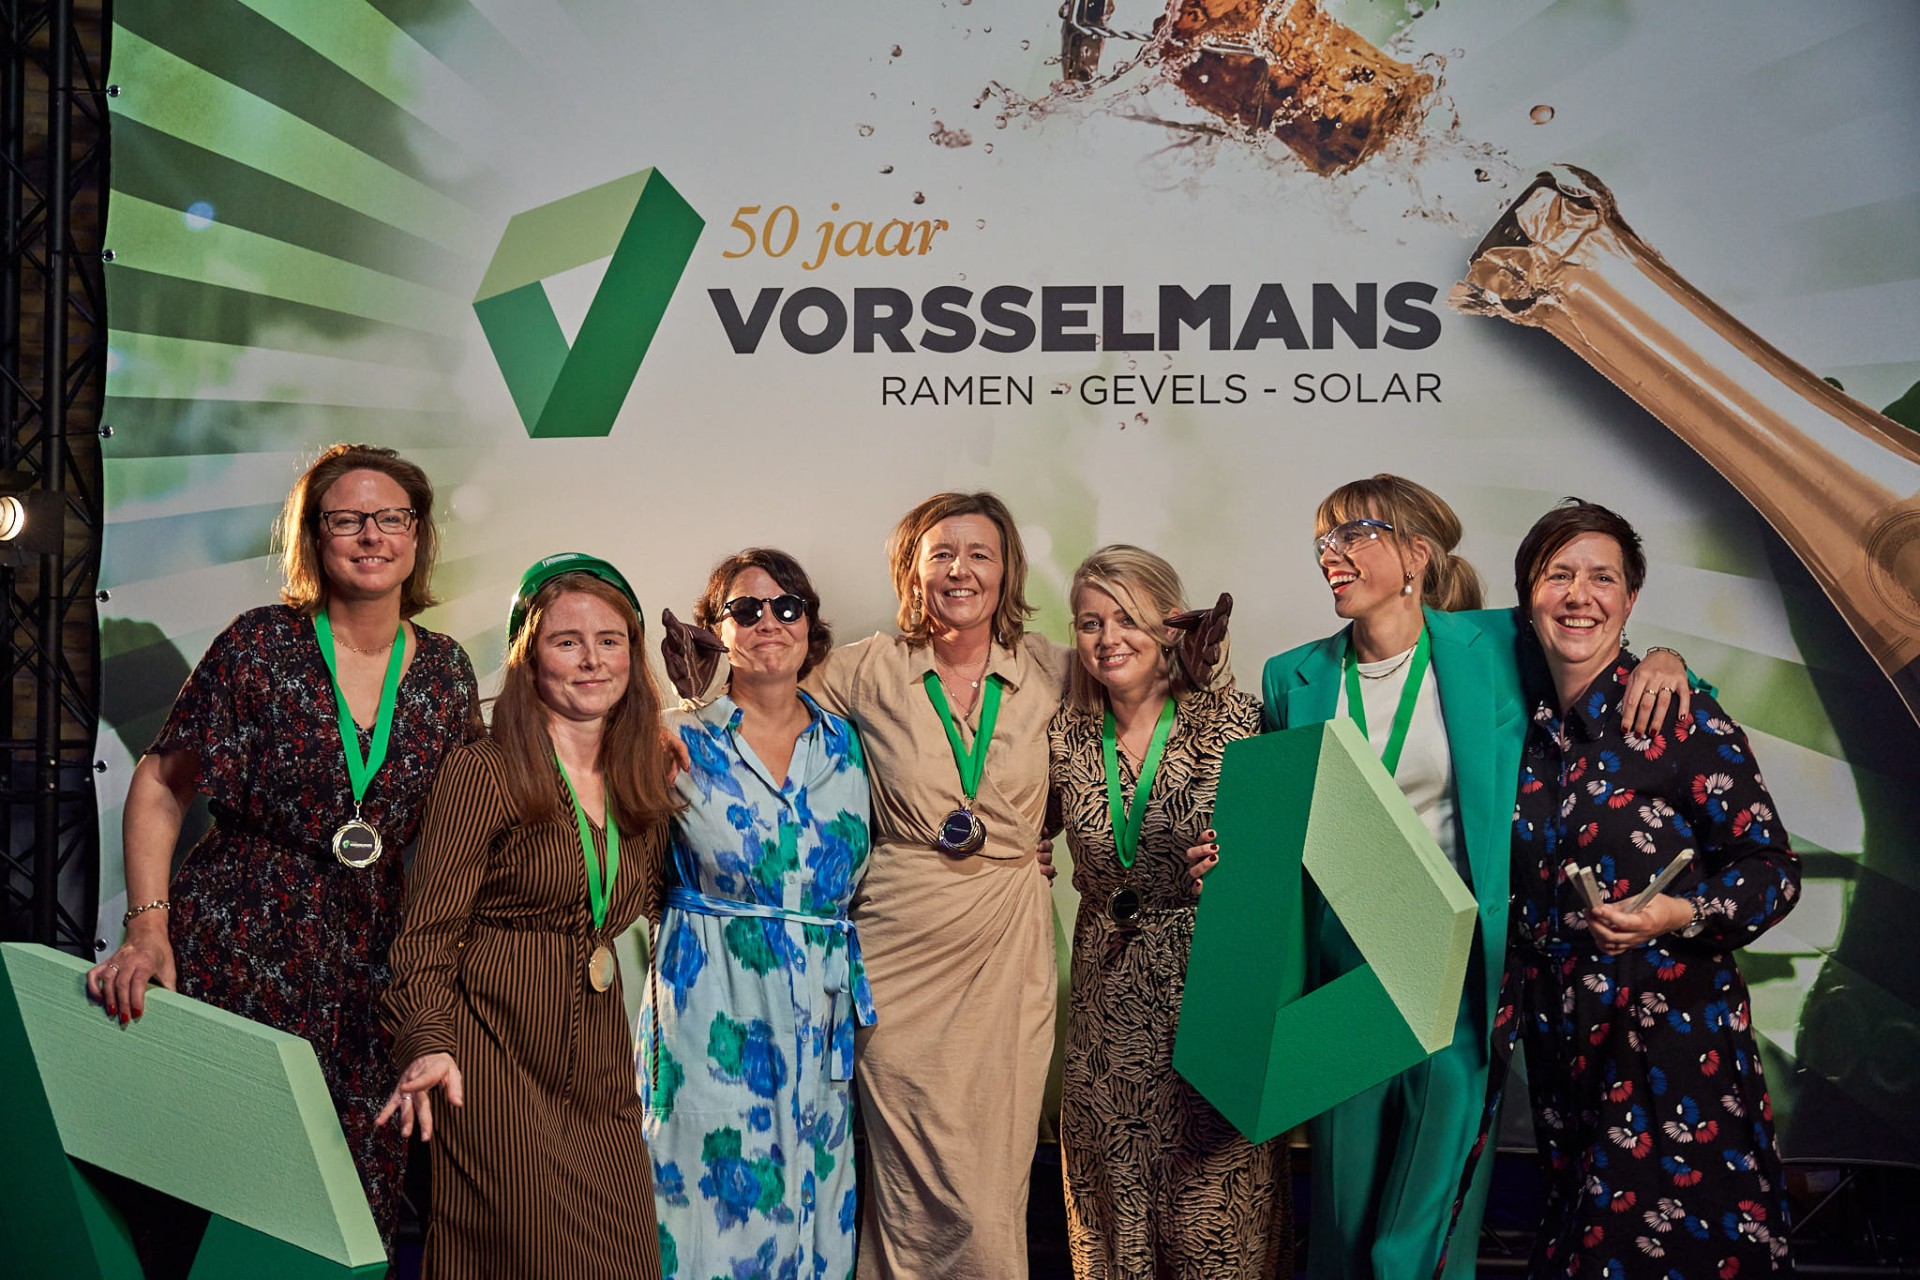 Vorsselmans teamfoto's feest 50 jaar